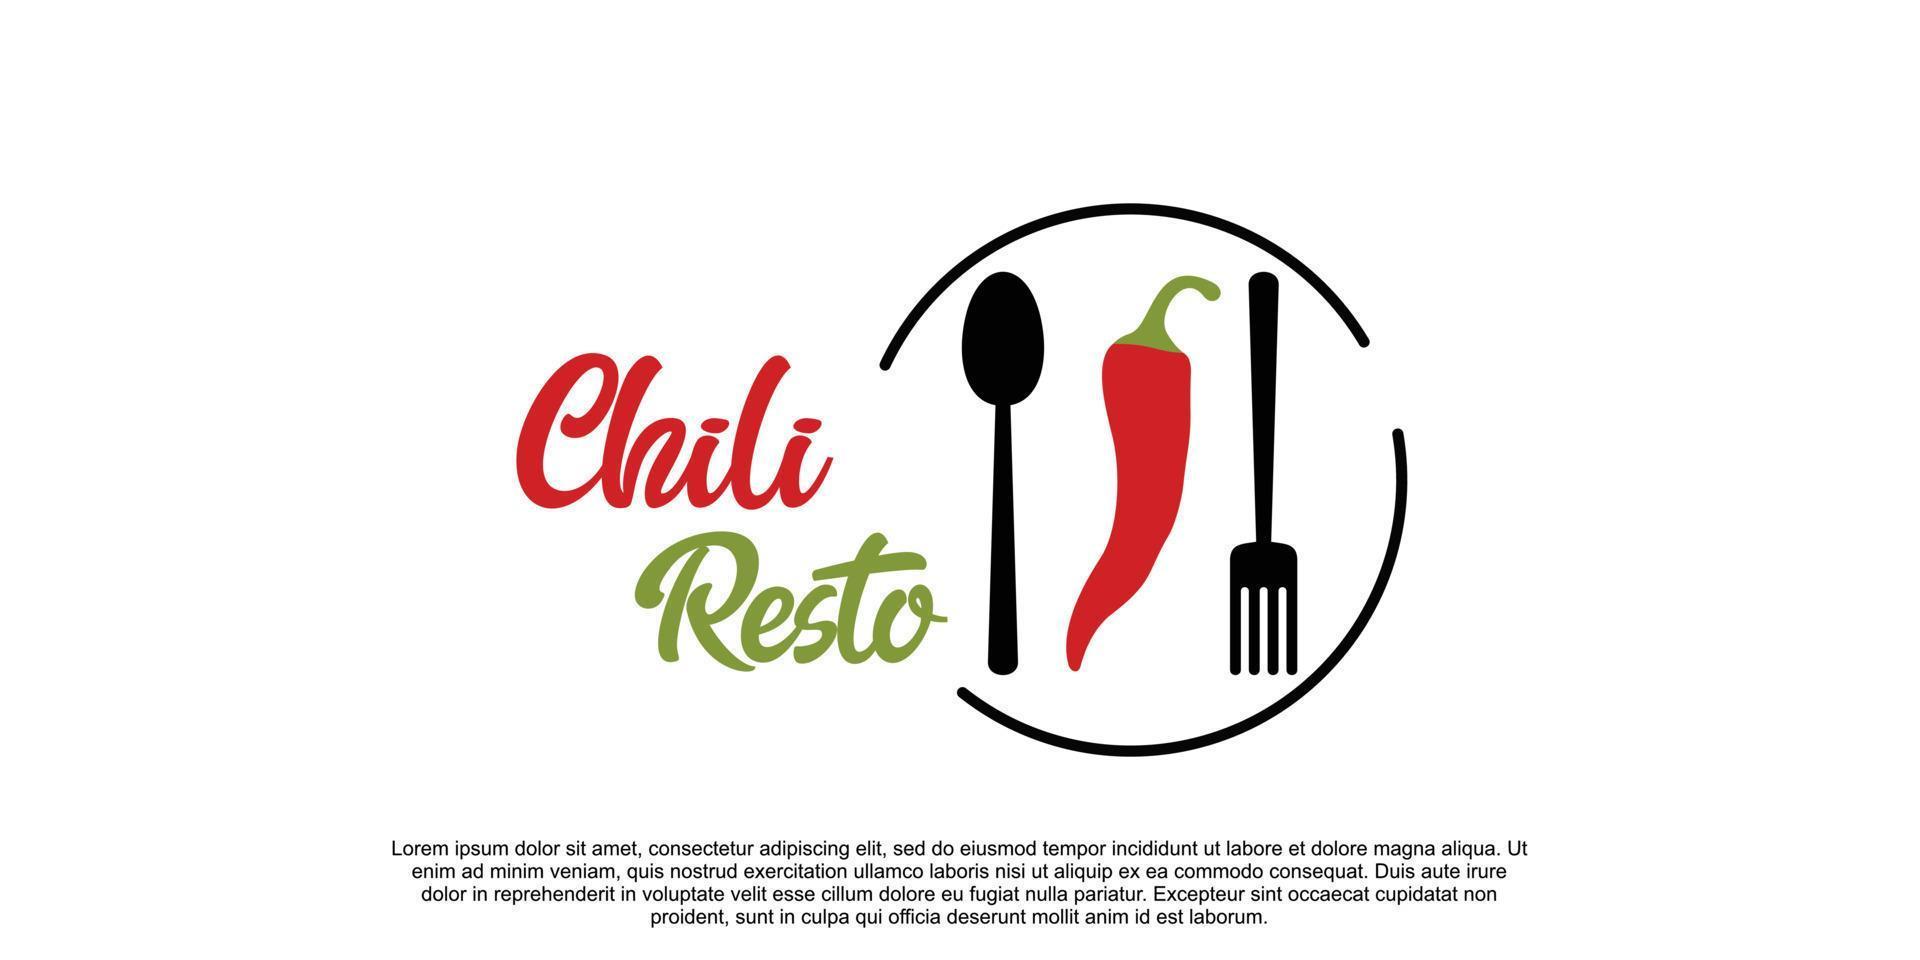 Chili Resto logo design with creative concept Premium Vector part 1